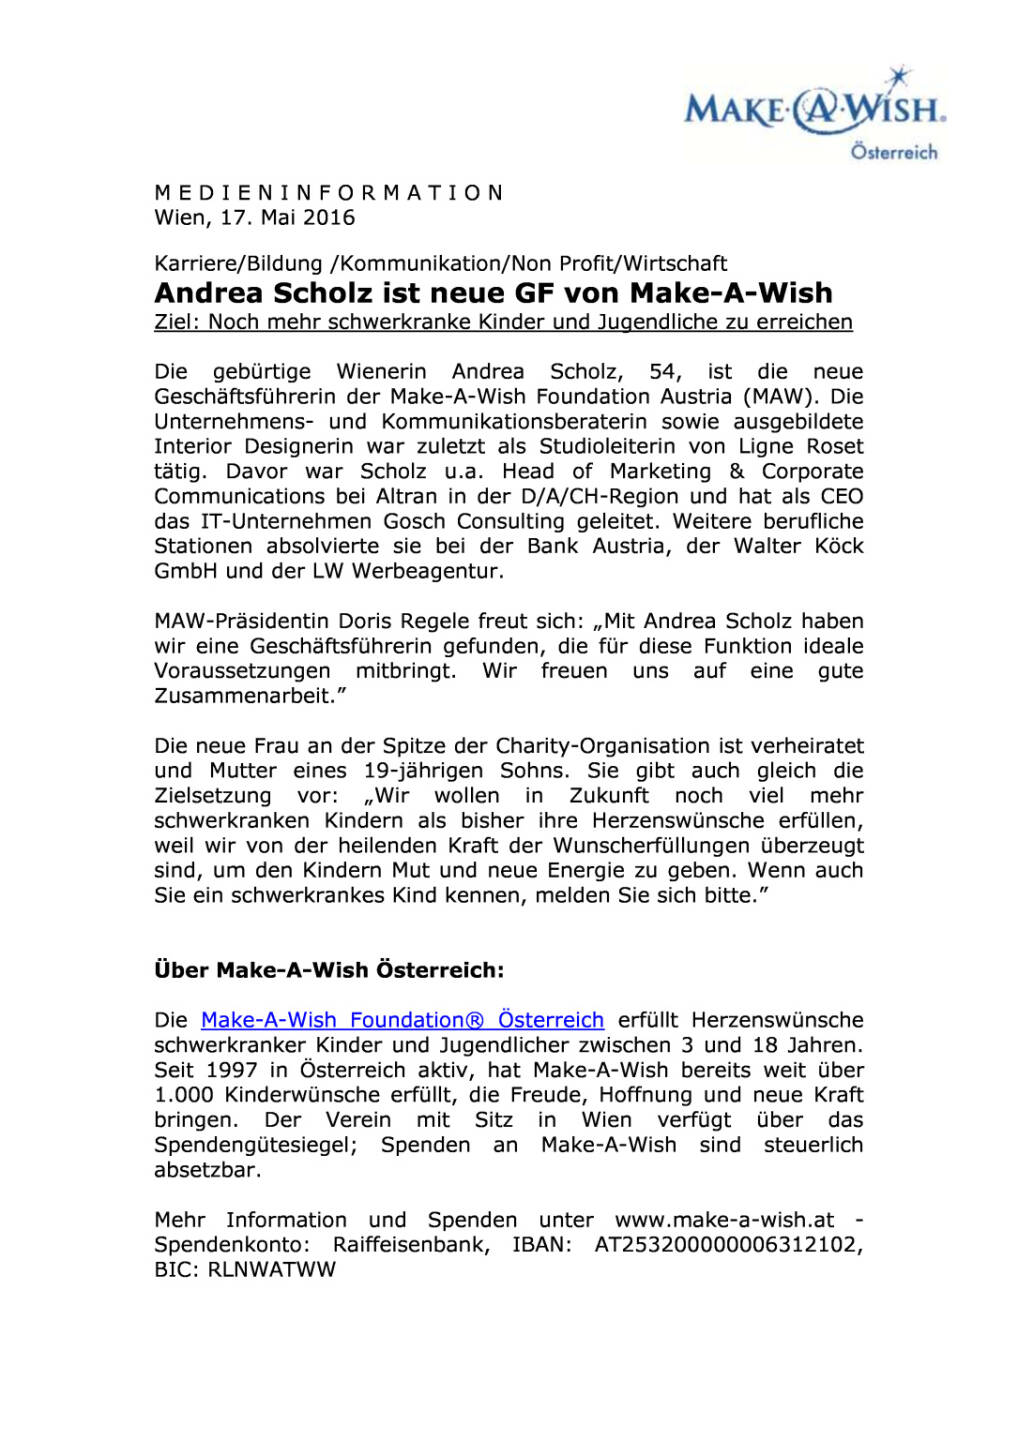 Make-A-Wish® Österreich : Andrea Scholz ist neue Geschäftsführerin , Seite 1/2, komplettes Dokument unter http://boerse-social.com/static/uploads/file_1068_make-a-wish_osterreich_andrea_scholz_ist_neue_geschaftsfuhrerin.pdf